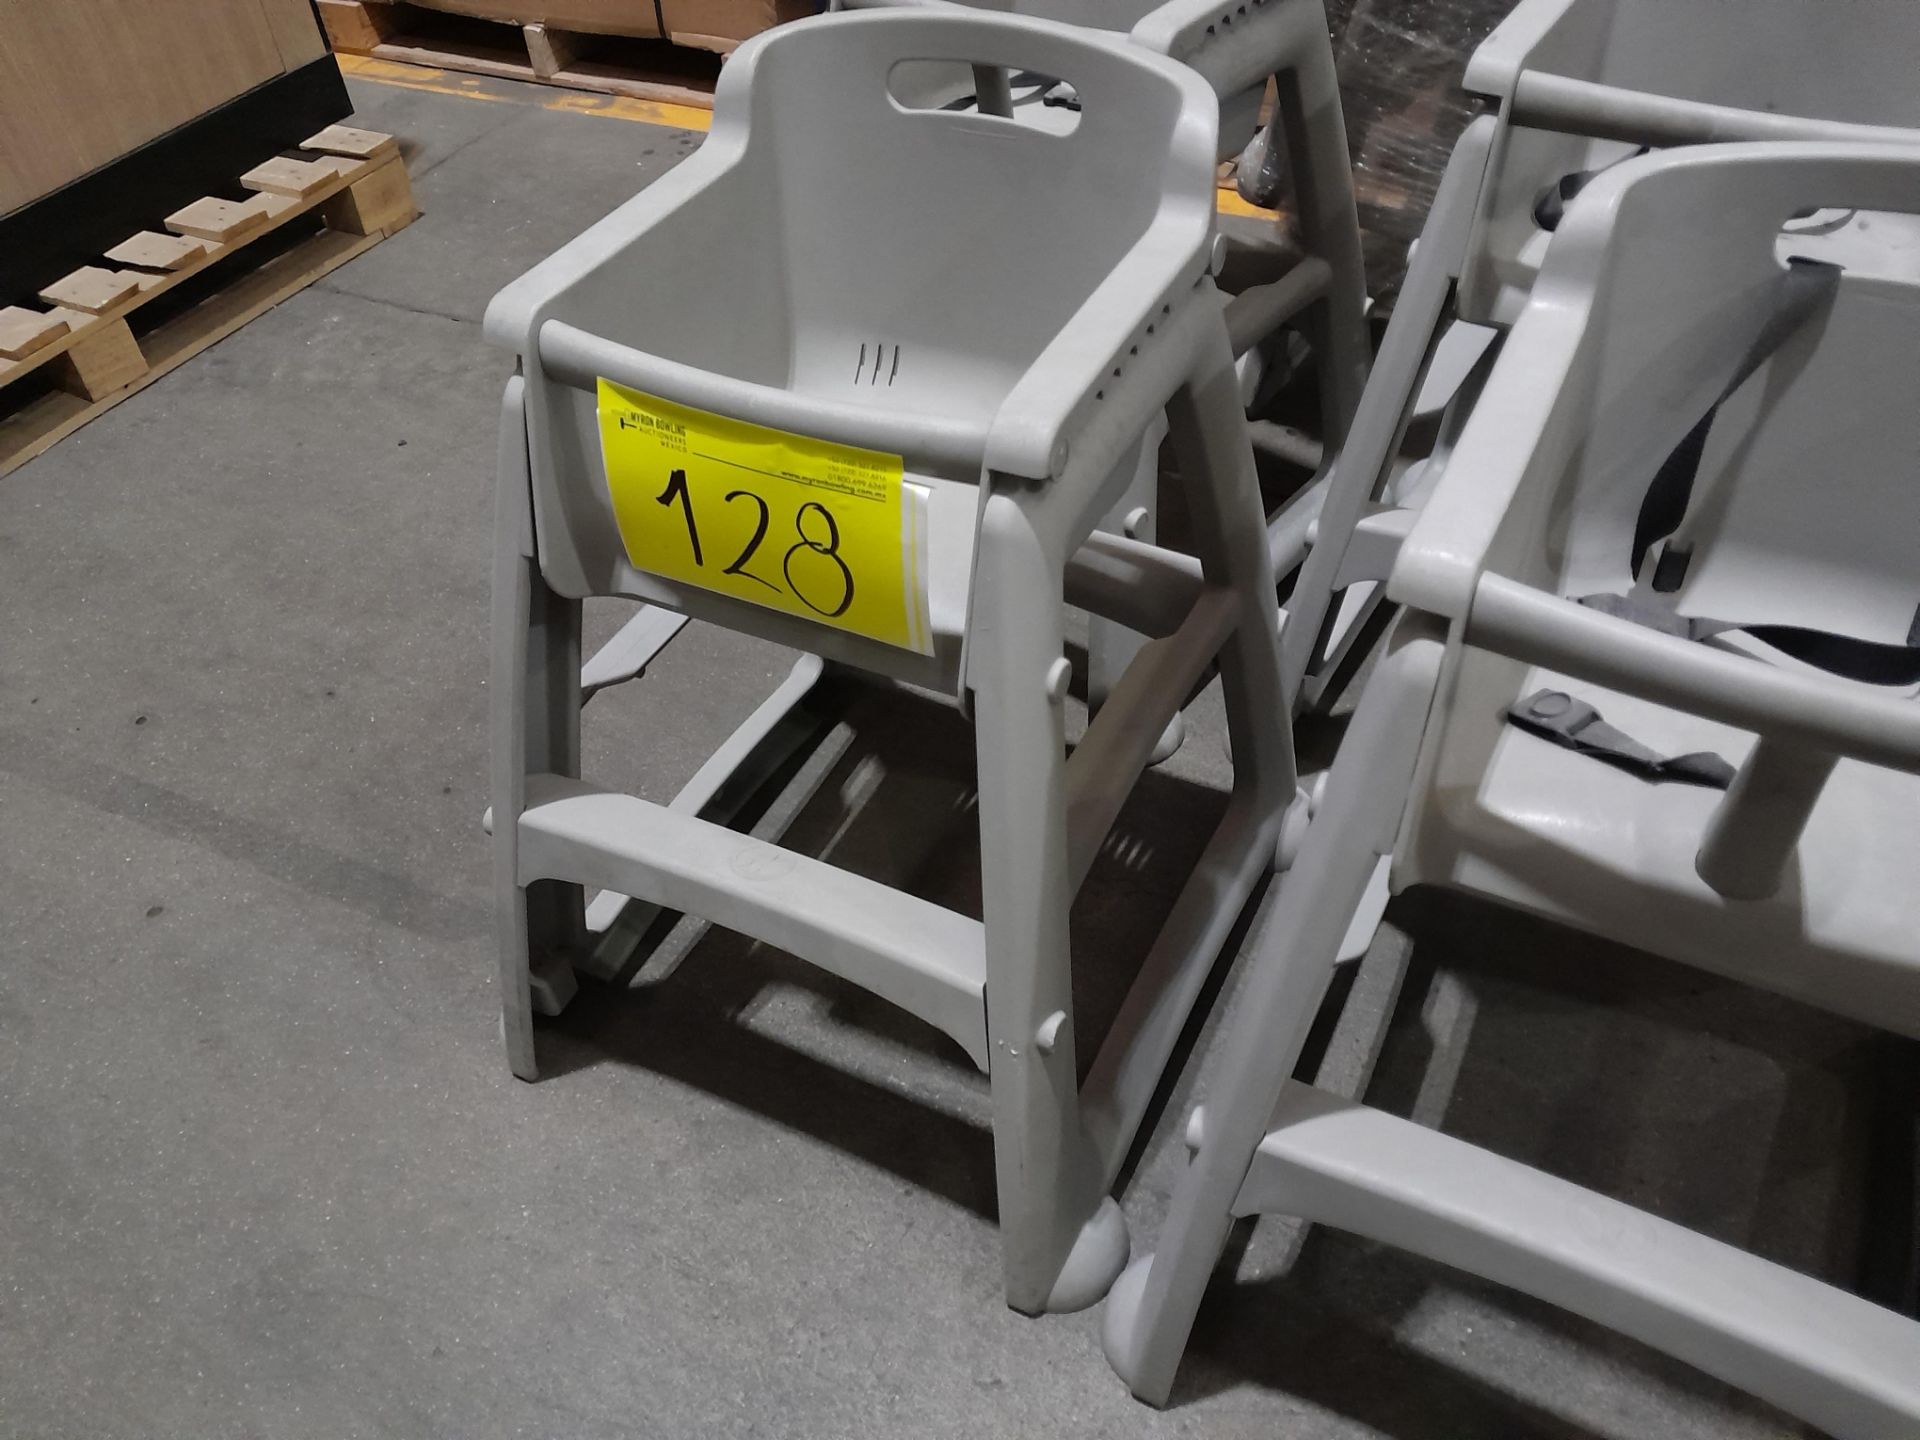 Lote de 7 sillas periqueras para niño, color gris (Equipo usado) - Image 3 of 4